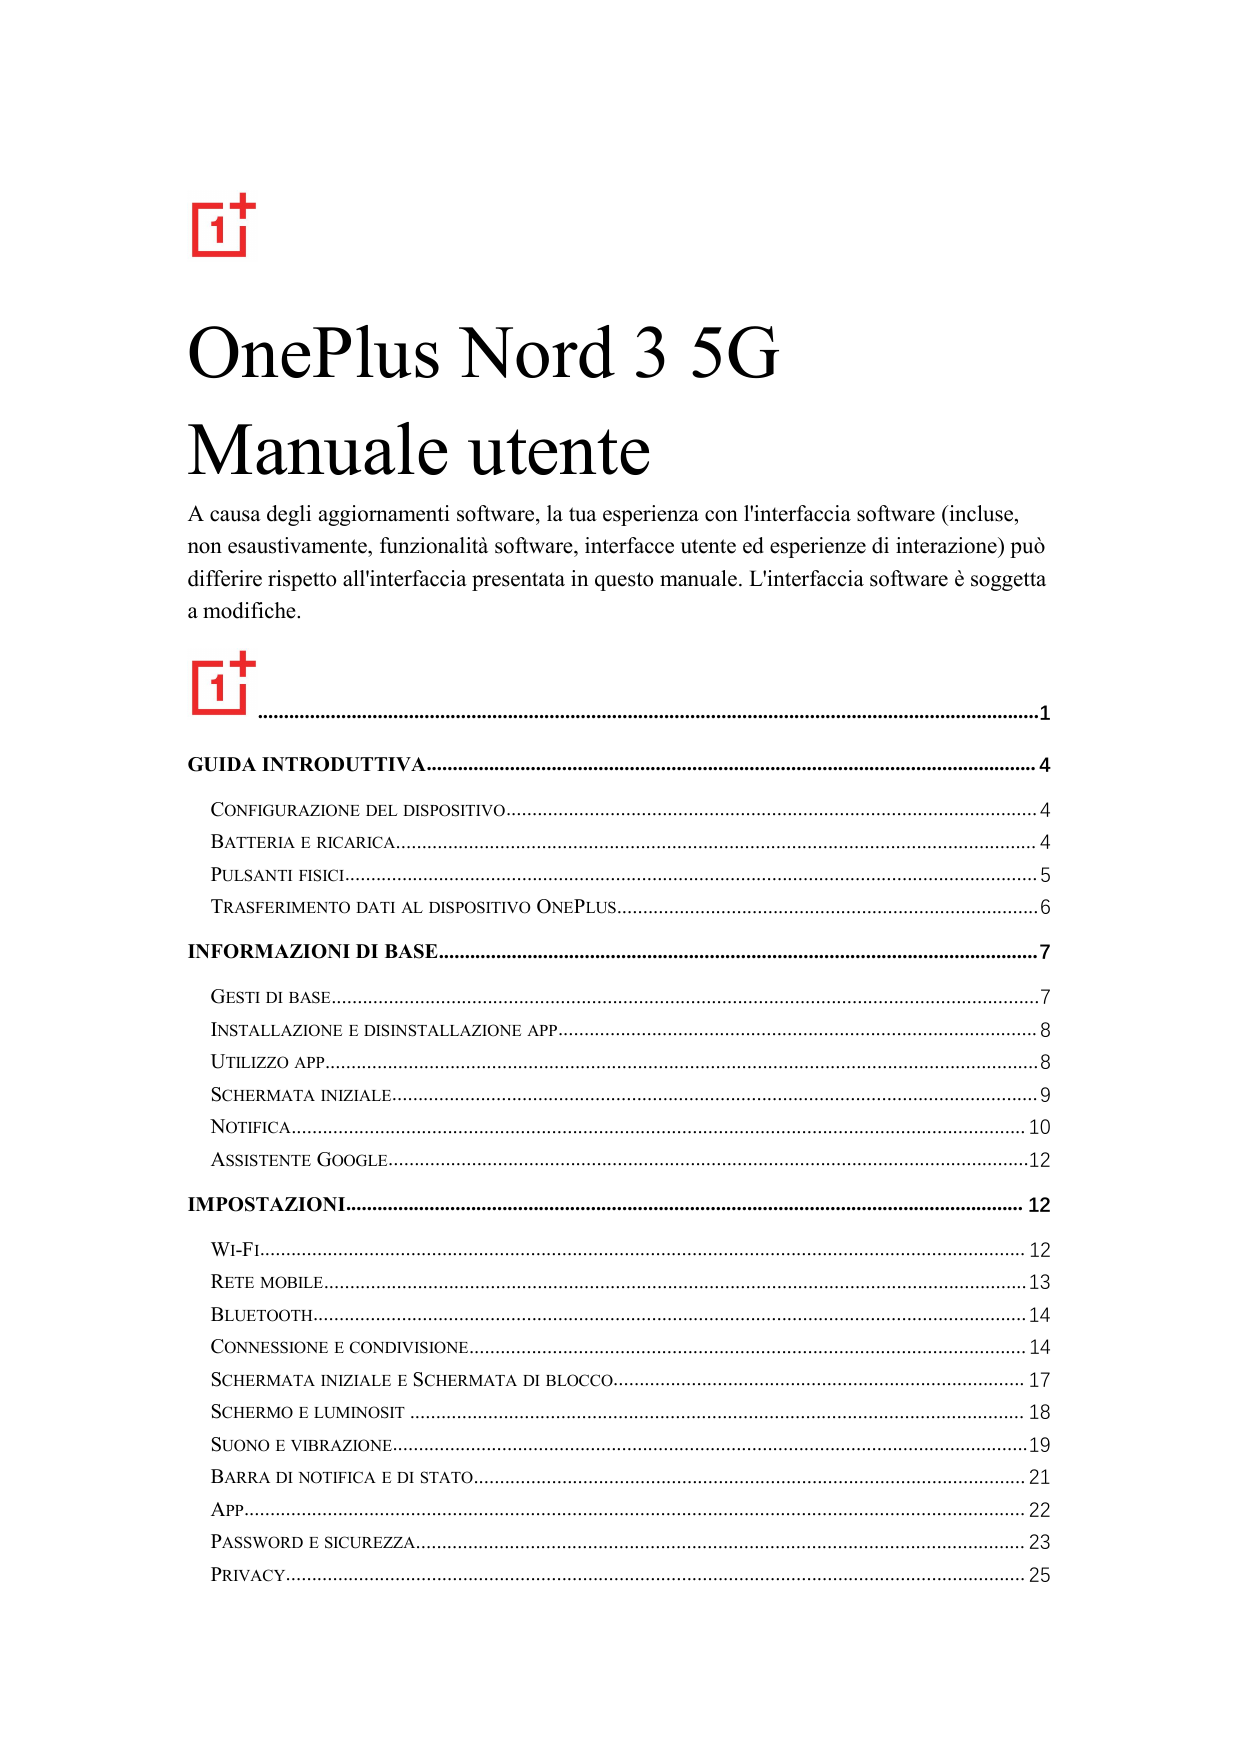 OnePlus Nord 3 5GManuale utenteA causa degli aggiornamenti software, la tua esperienza con l'interfaccia software (incluse,non e